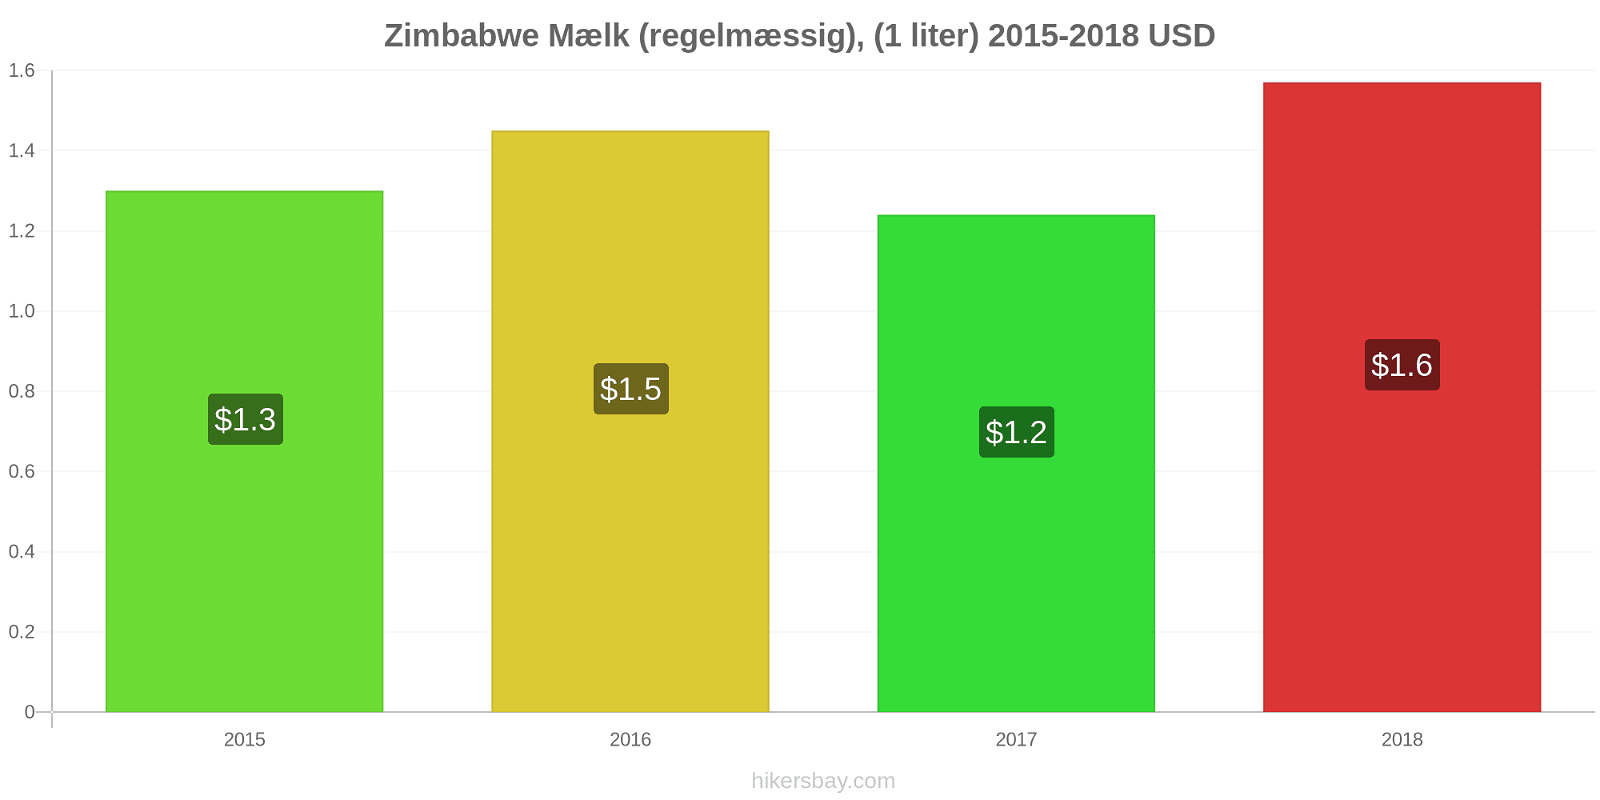 Zimbabwe prisændringer Mælk (regelmæssig), (1 liter) hikersbay.com